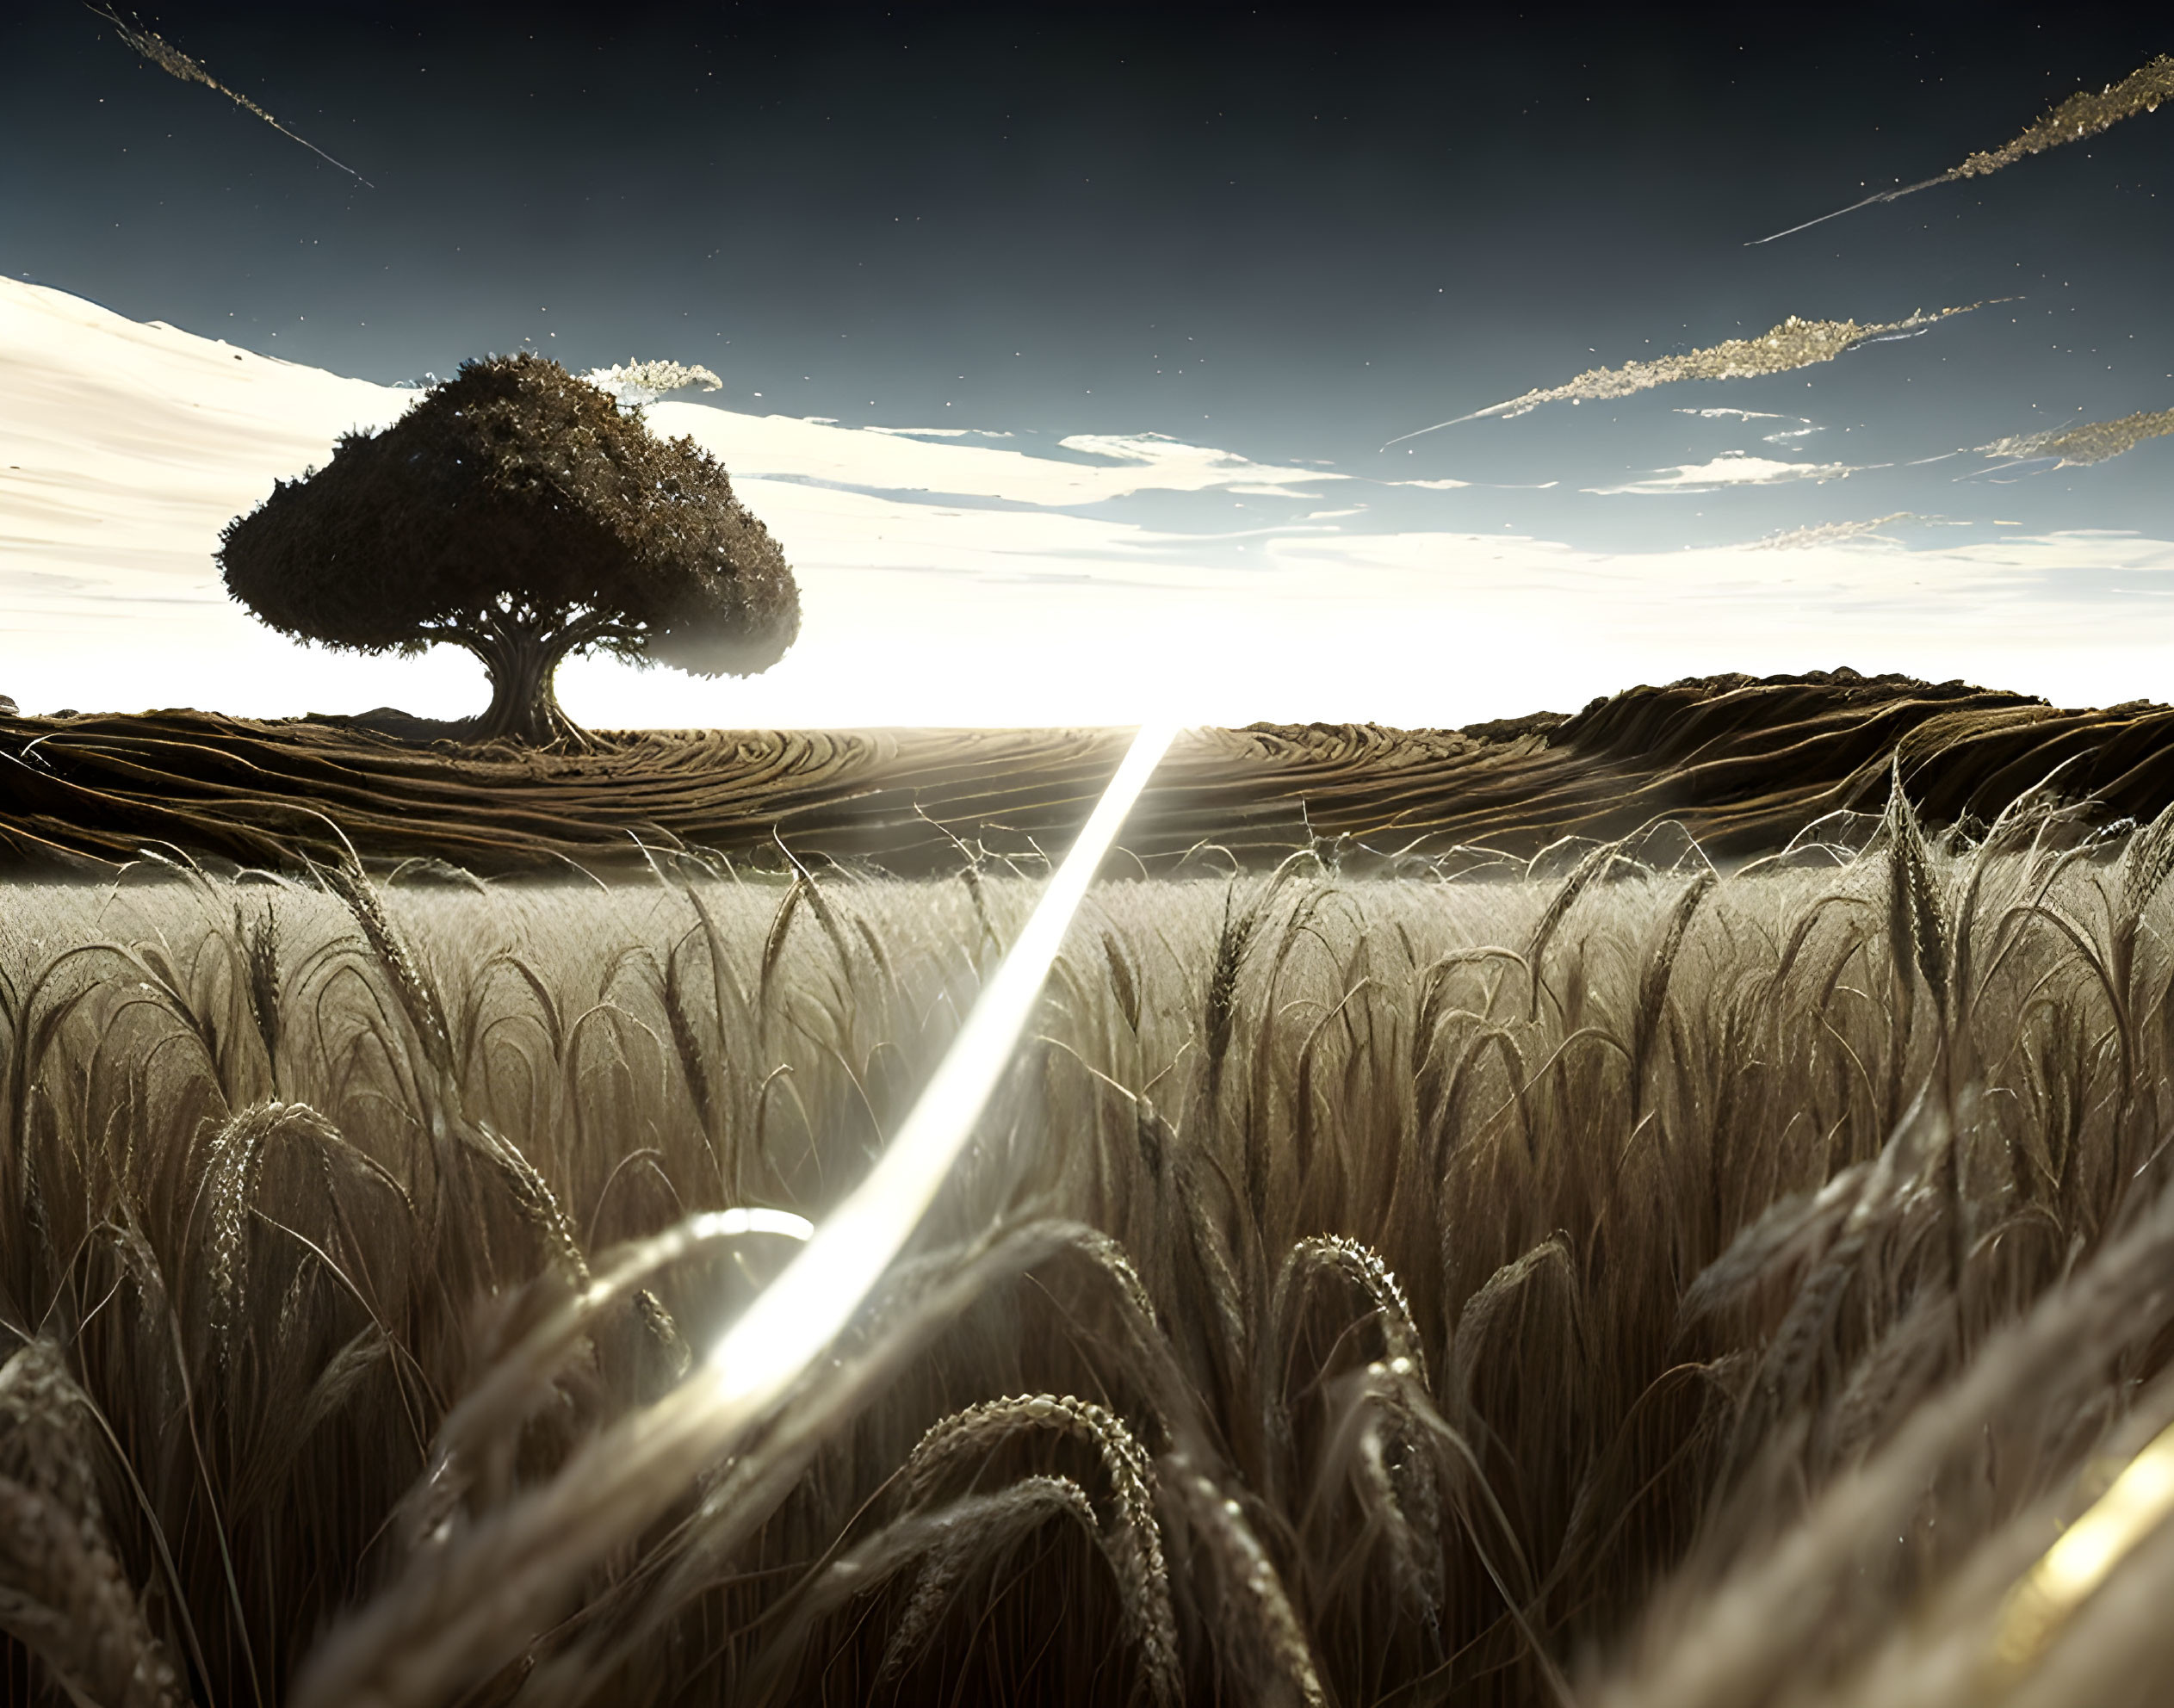 A soul in a wheat field 